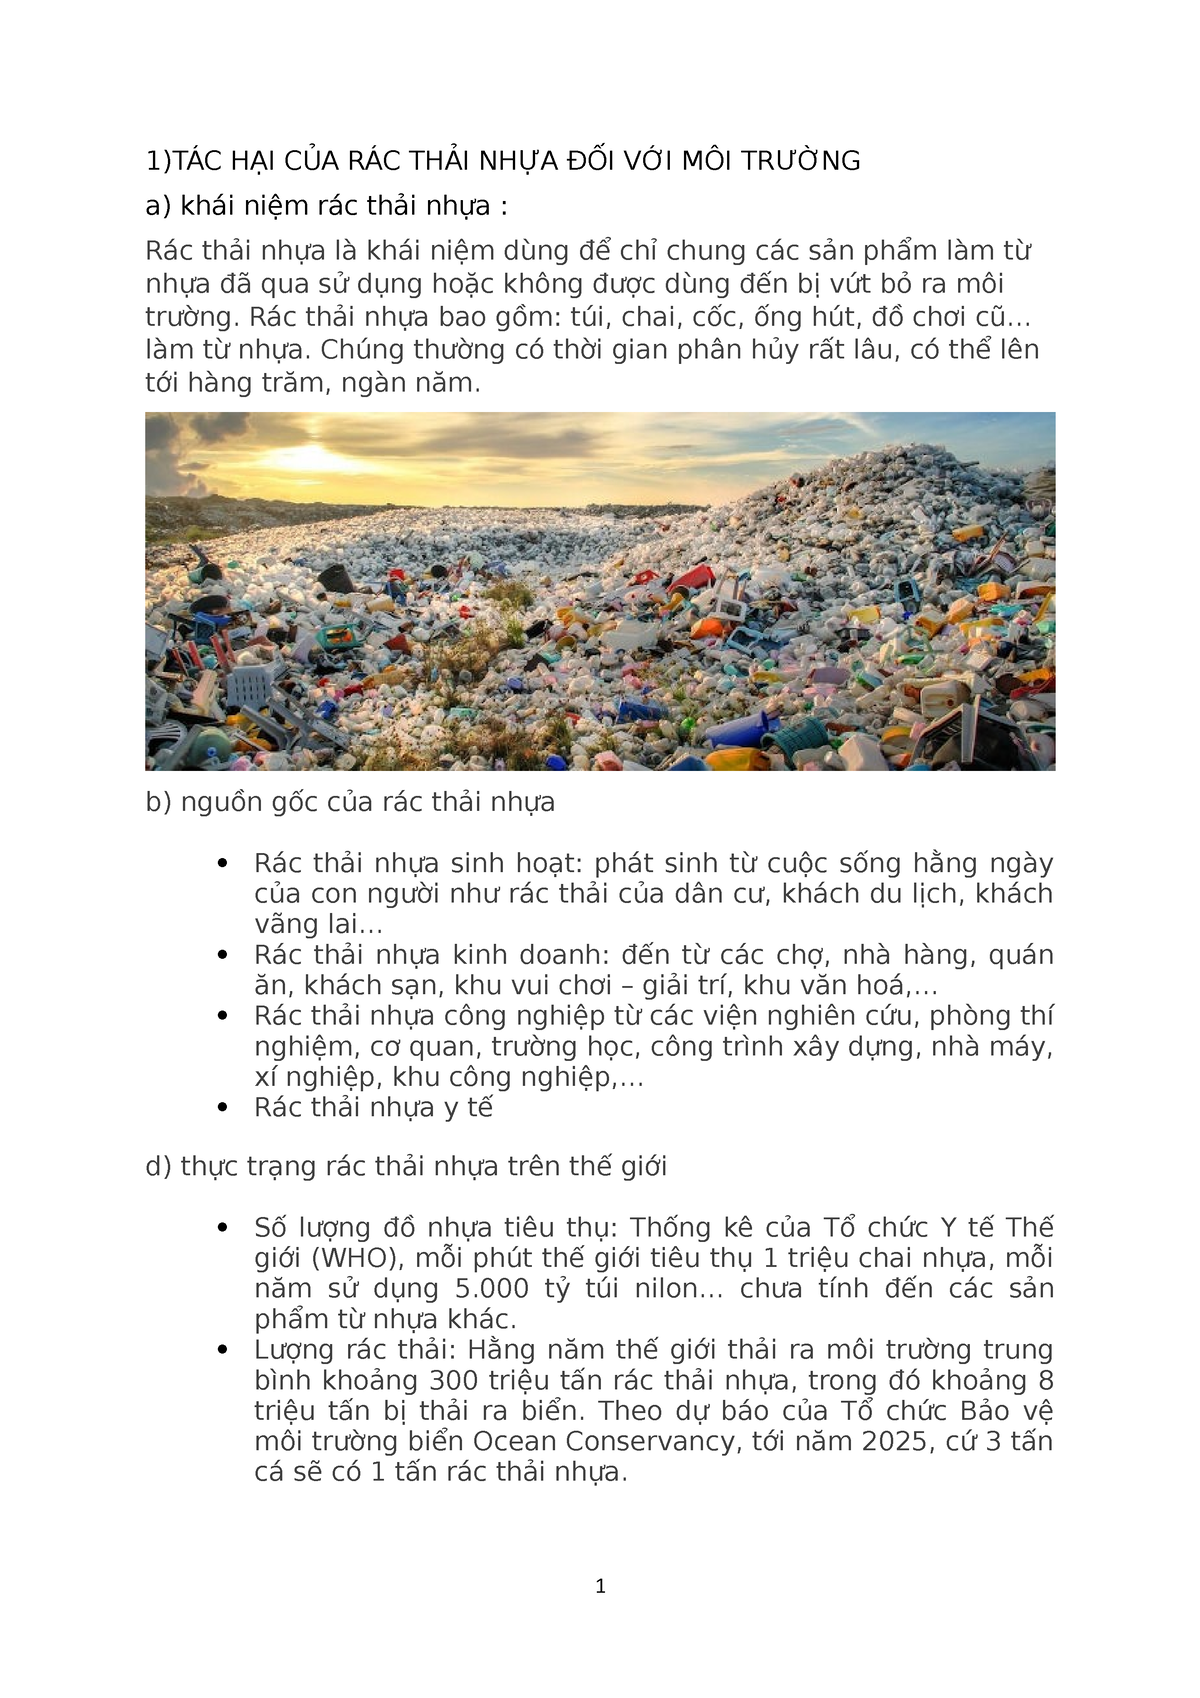 Nd moi truong - OK gooof - 1)TÁC HẠI CỦA RÁC THẢI NHỰA ĐỐI VỚI MÔI TRƯỜNG a) khái niệm rác thải nhựa - Studocu